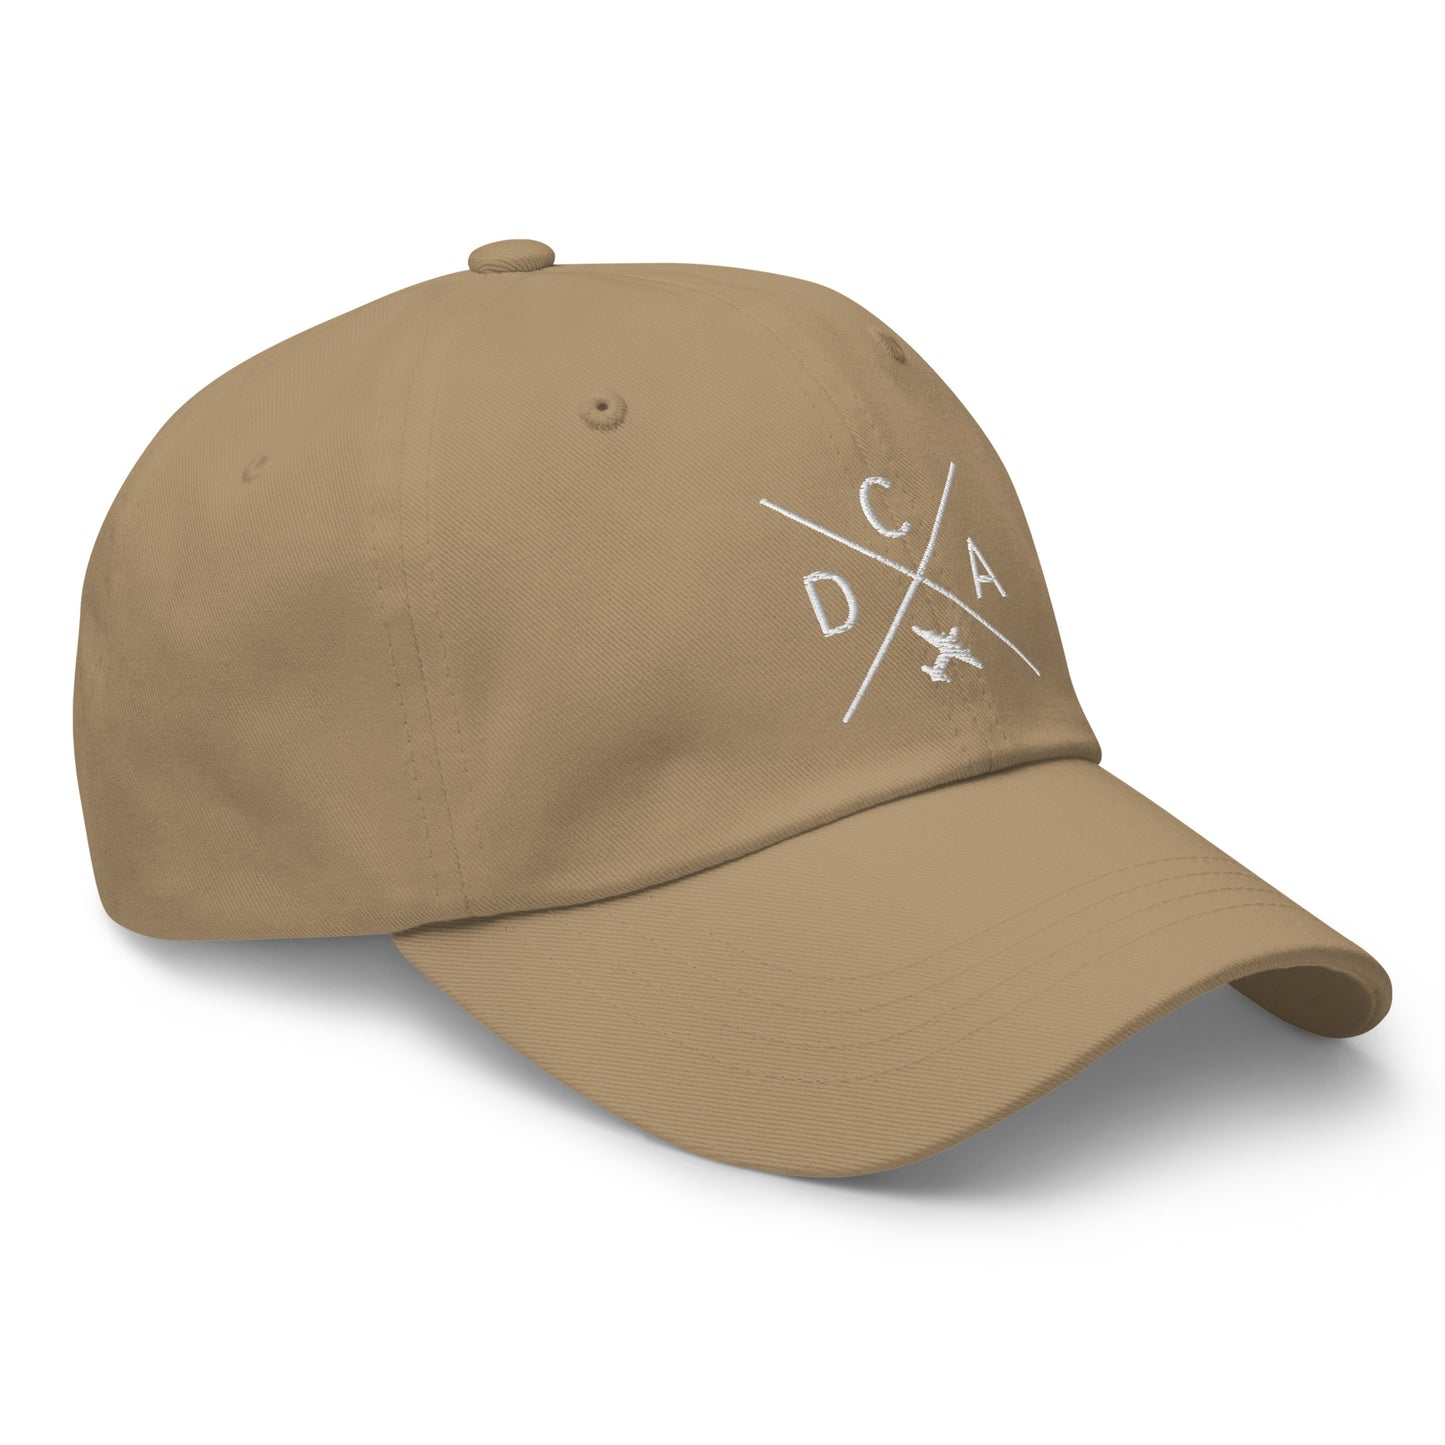 Crossed-X Dad Hat - White • DCA Washington • YHM Designs - Image 23